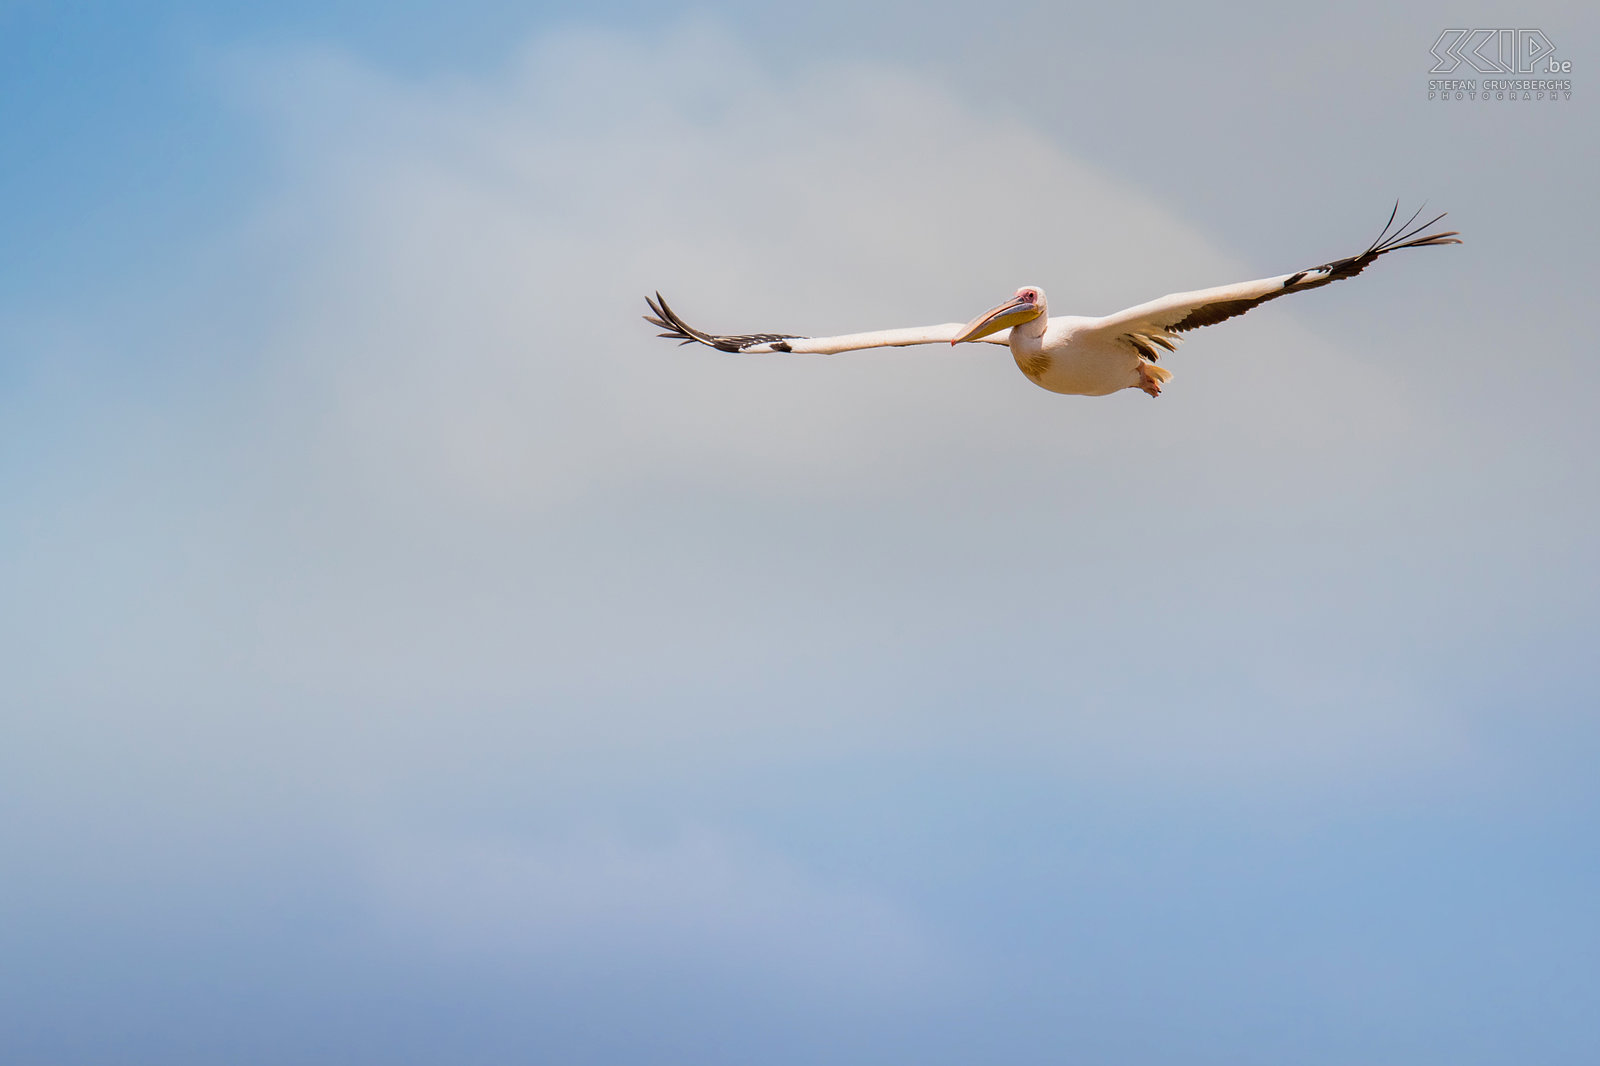 Lake Ziway - Roze pelikaan Lake Ziway is één van de 6 meren in de Rift Valley en een van de beste plaatsen van Ethiopië voor birdwatching. Wij maakten er een boottochtje en konden veel nijlpaarden en vogels zoals roze pelikanen, reigers, aalscholvers, slangehalsvogels, hamerkoppen, ijsvogels, … spotten. Stefan Cruysberghs